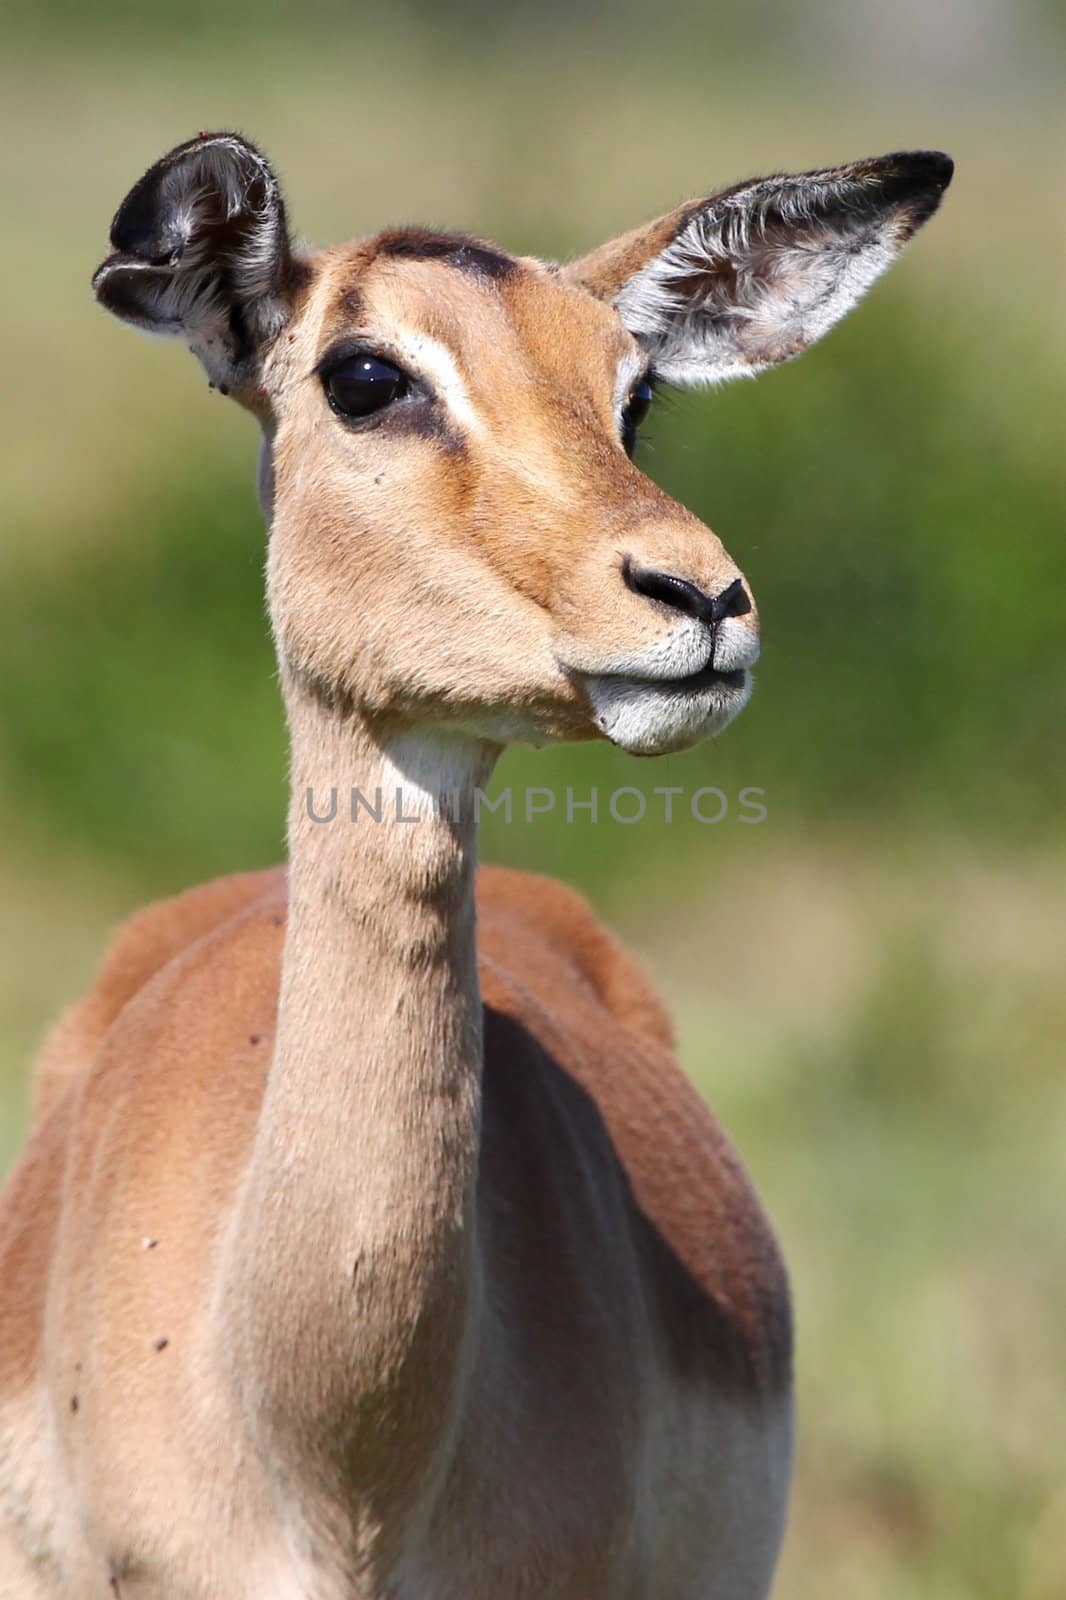 Impala antelope female with large eyes and ears